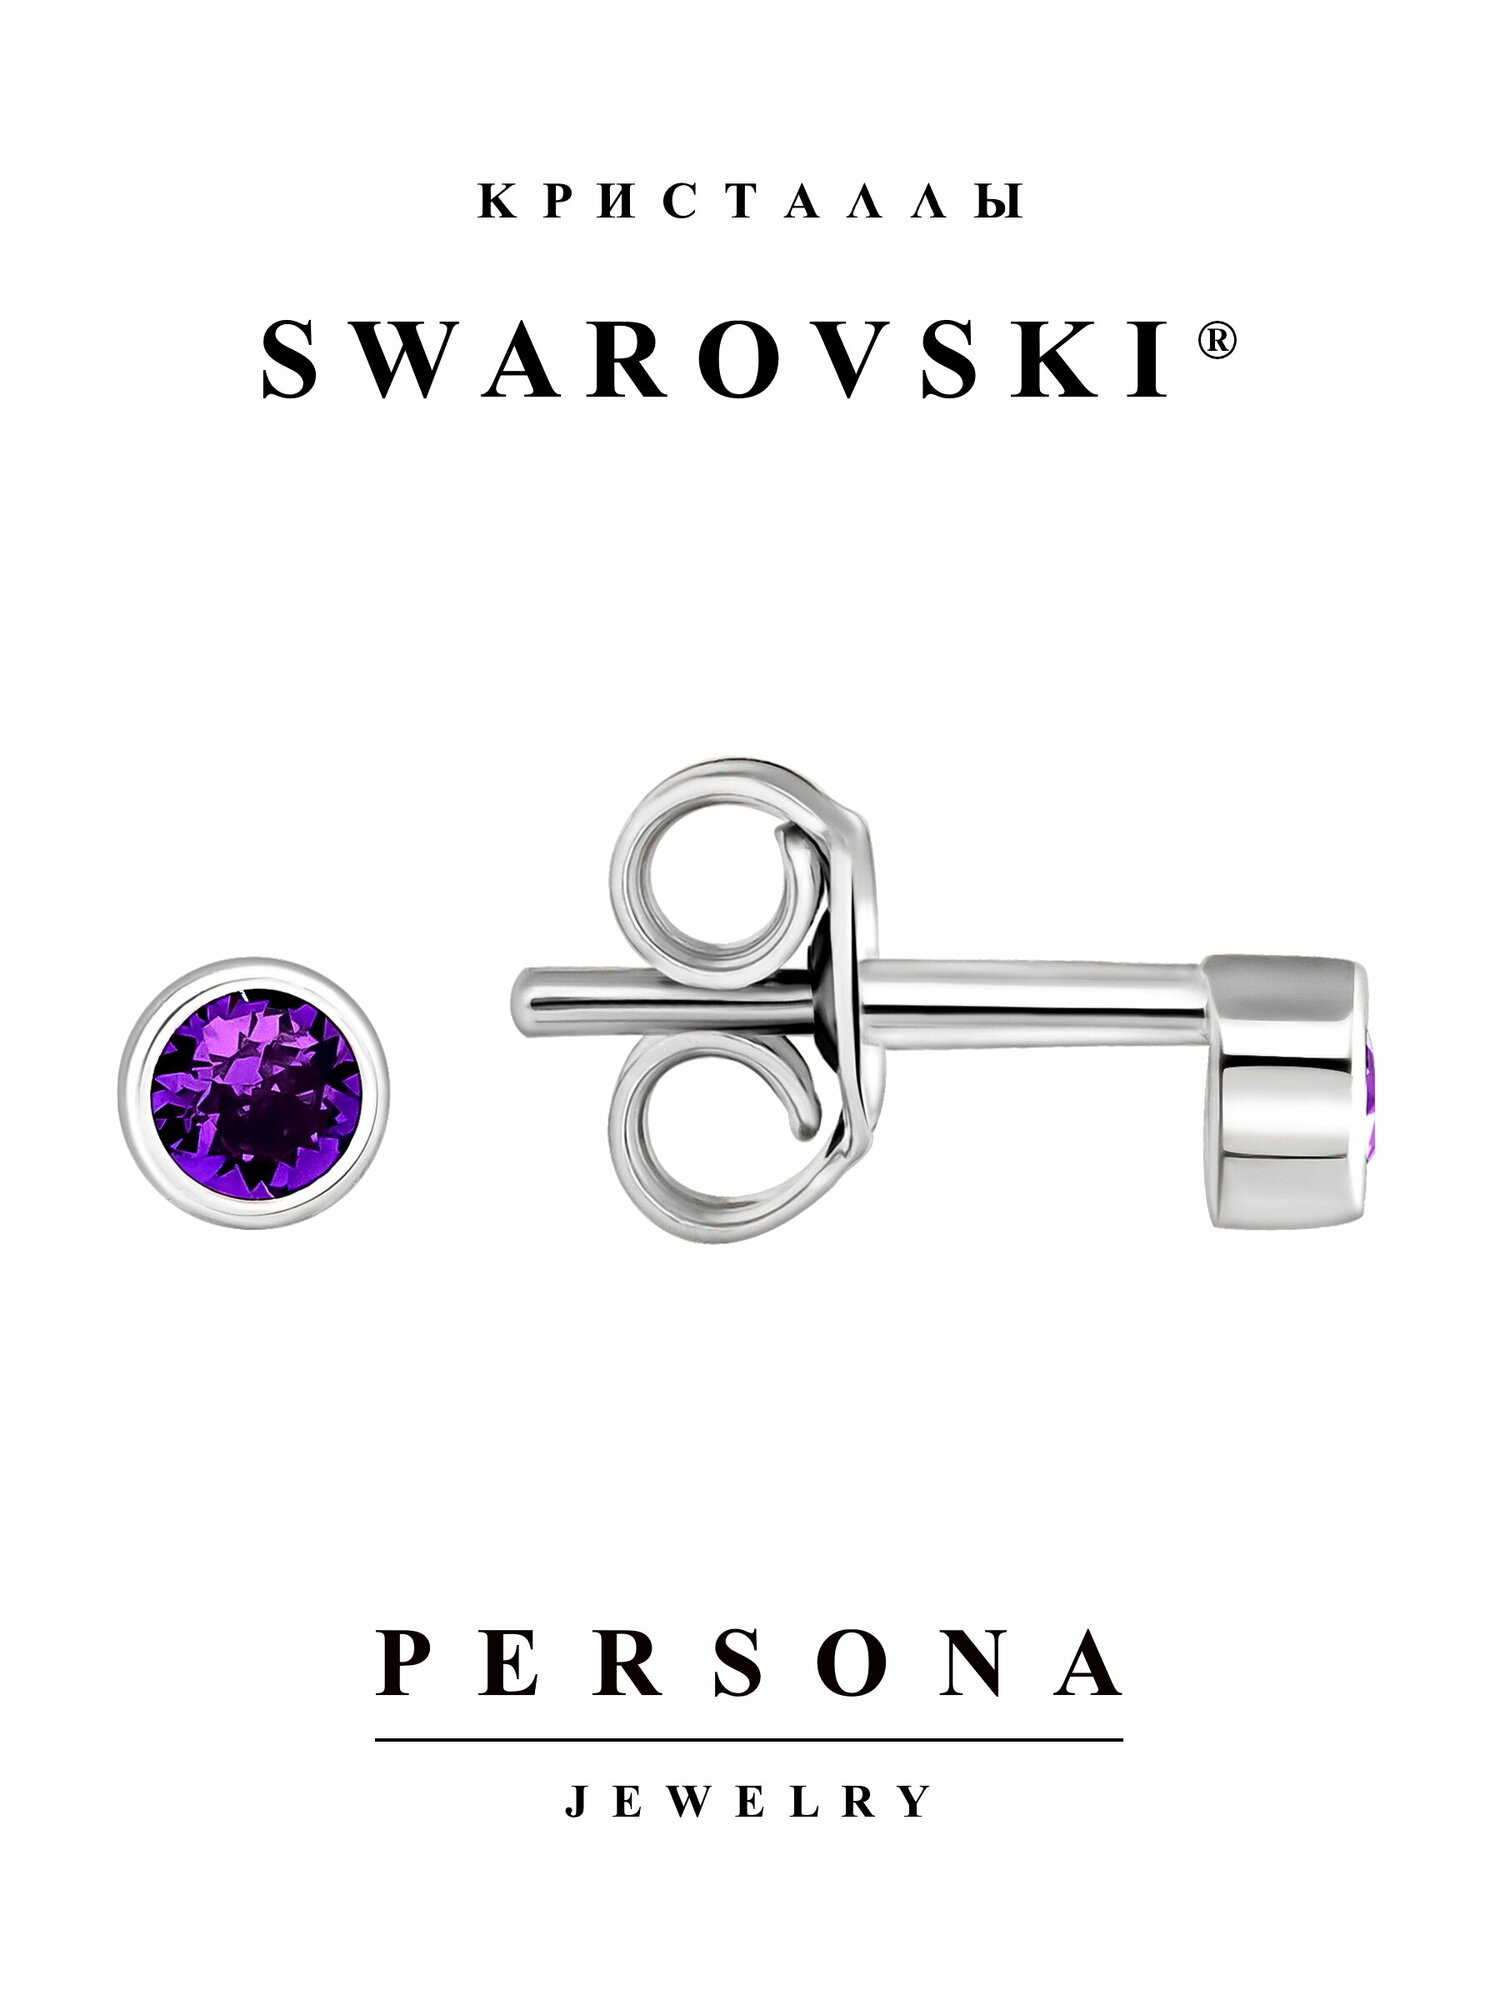 Серьги пусеты ПЕРСОНА, серебро, 925 проба, родирование, кристаллы Swarovski, размер/диаметр 4 мм, длина 1.2 см, фиолетовый